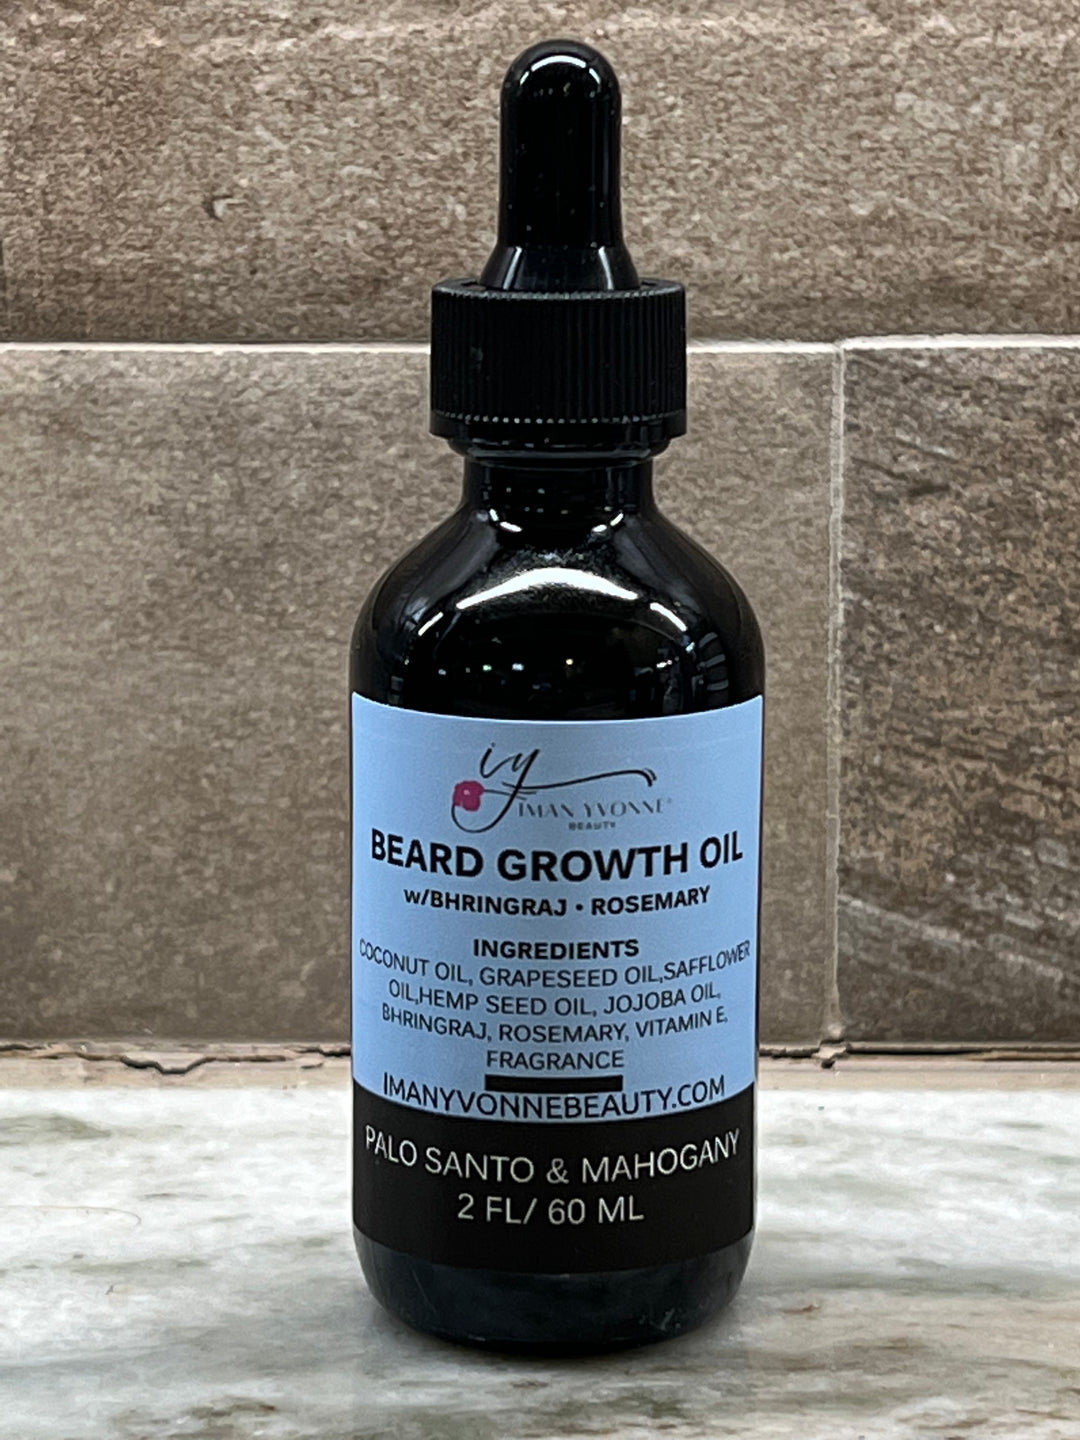 Beard Growth Oil - Palo Santo & Mahogany